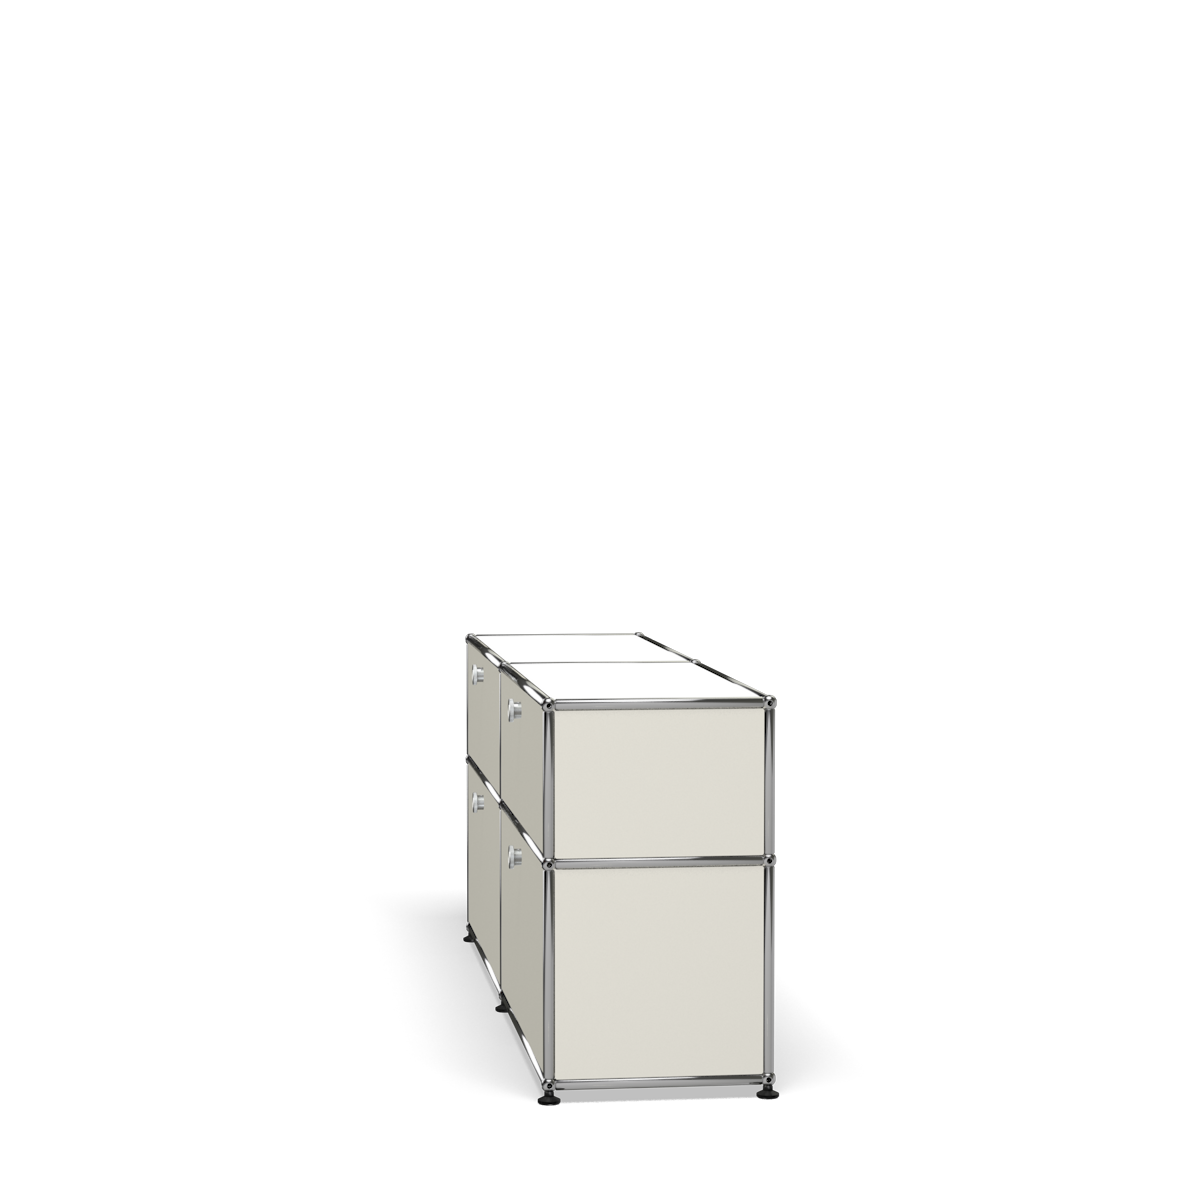 USM Haller Storage Credenza Sideboard with Drawers (D) – USM